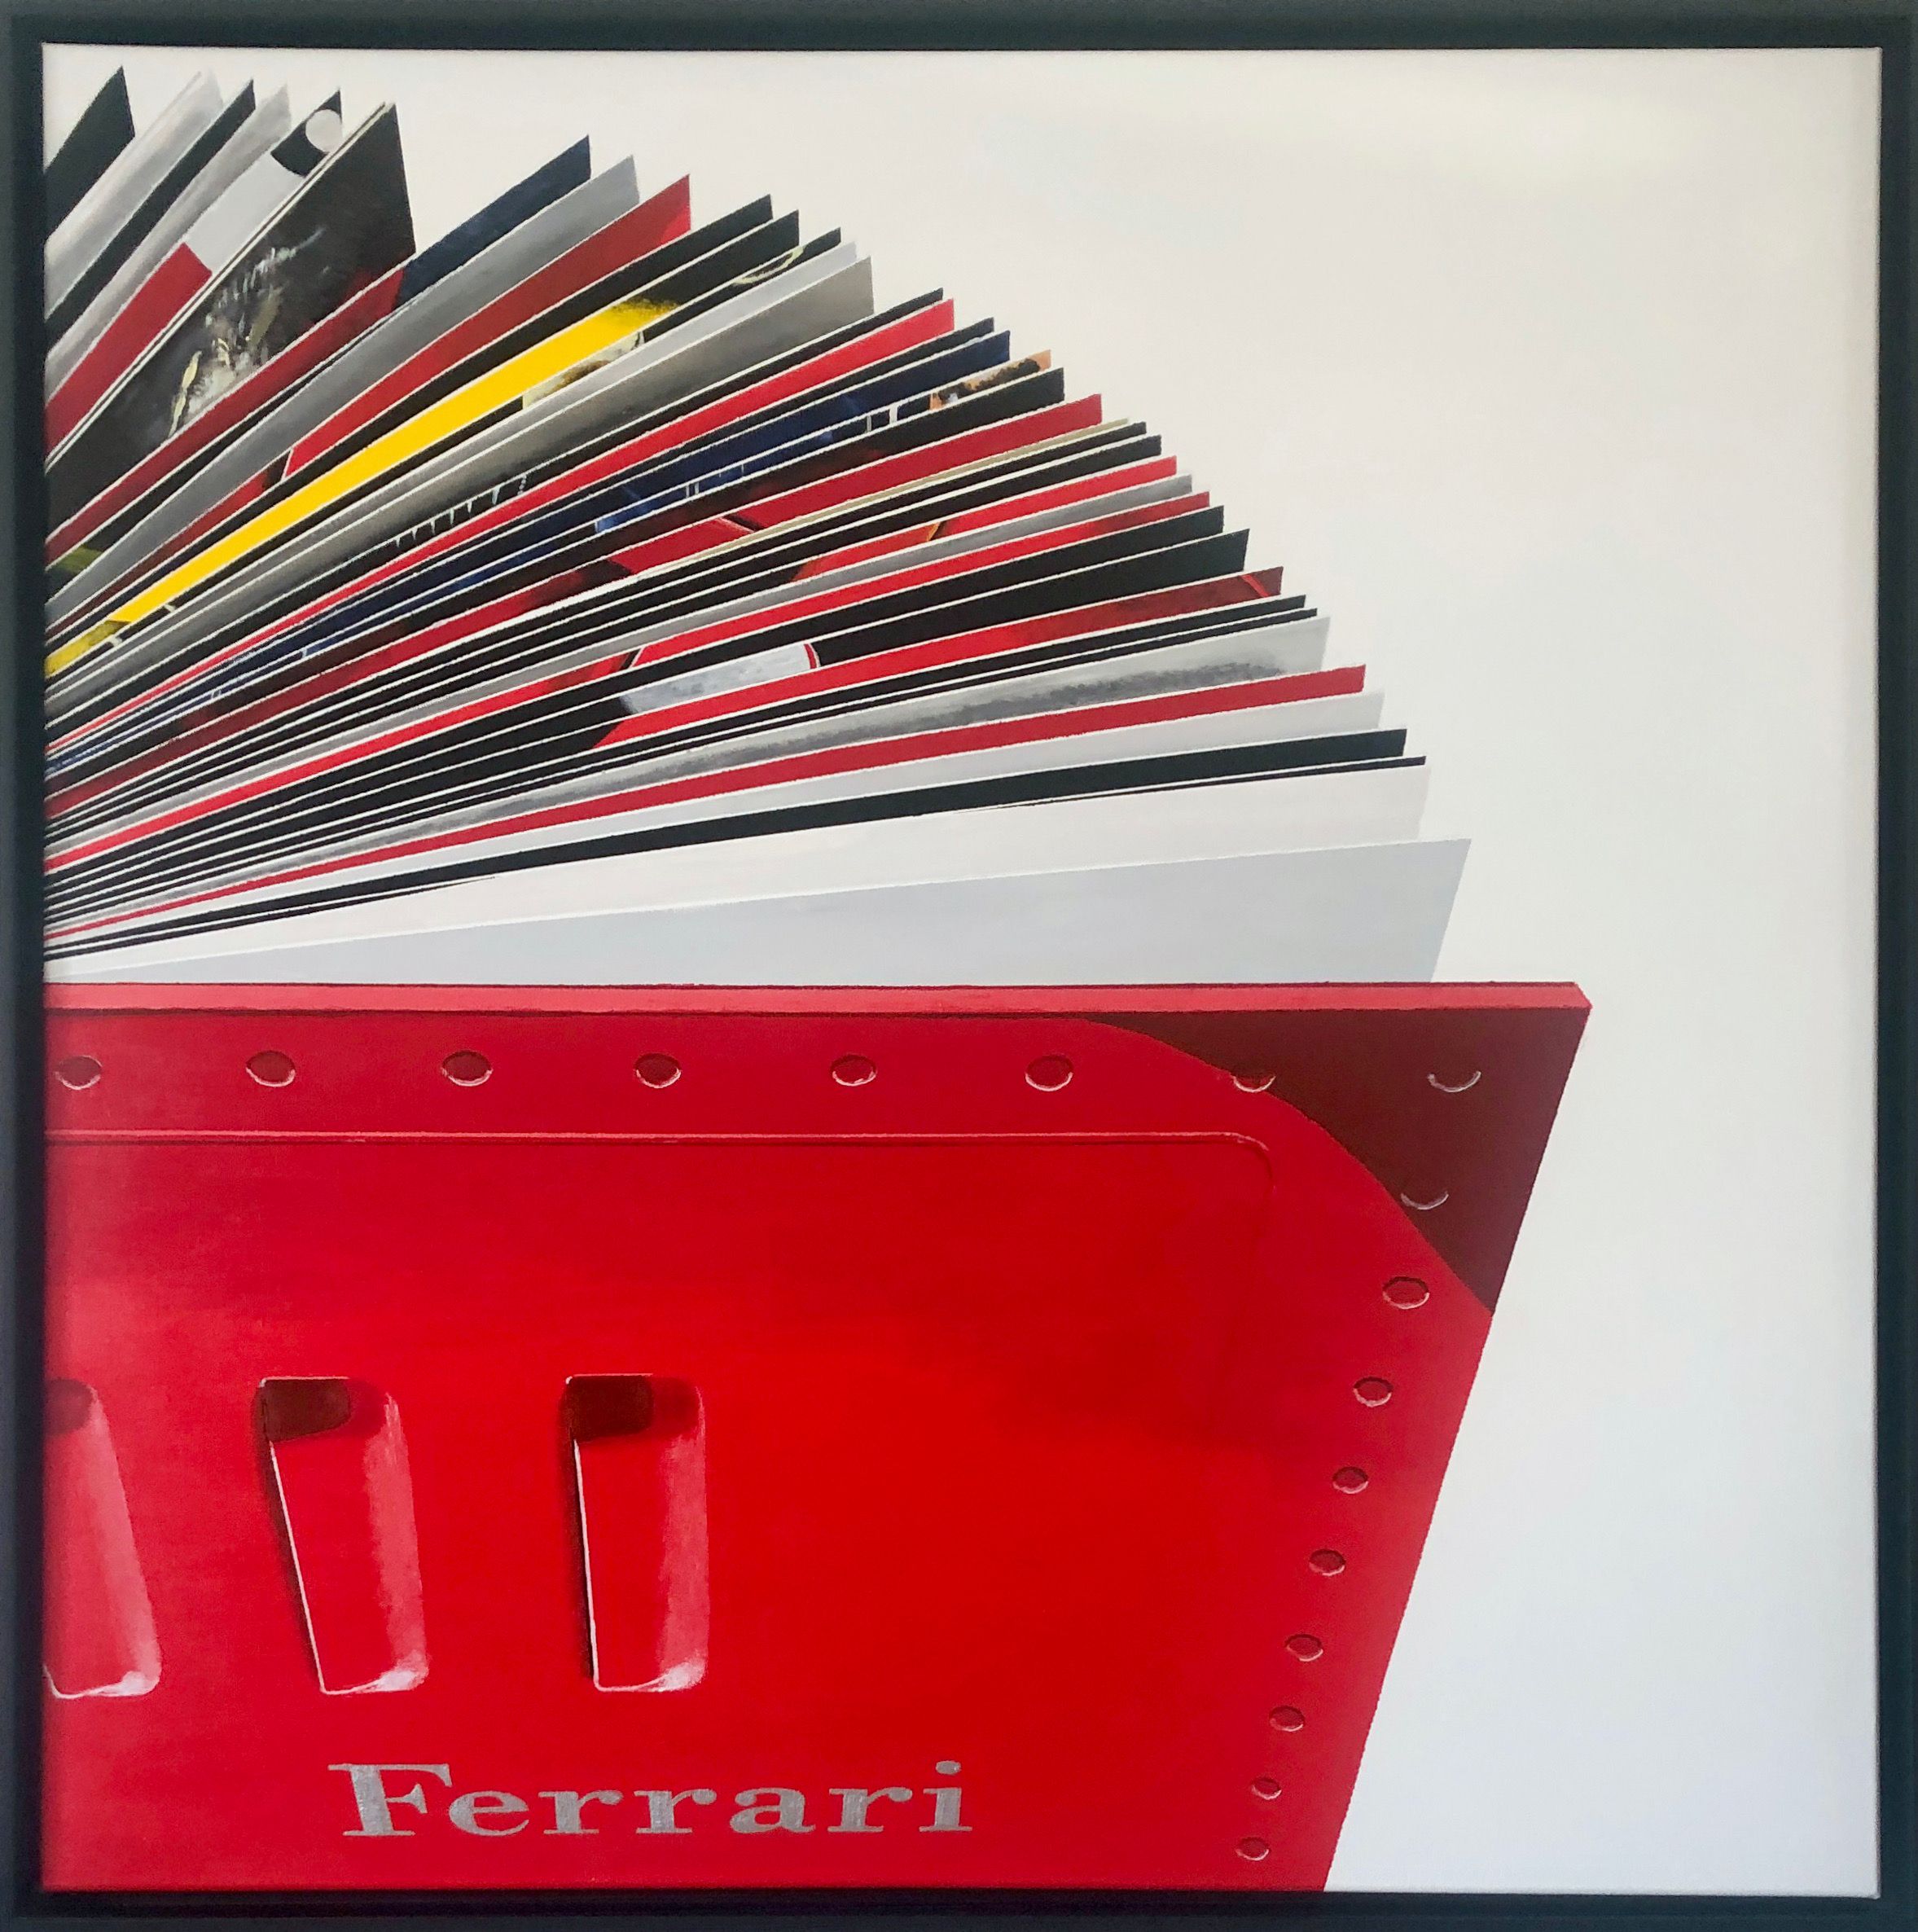 Rolf Gnauck "FERRARI" Peinture détaillée grand format et colorée d'un livre ouvert